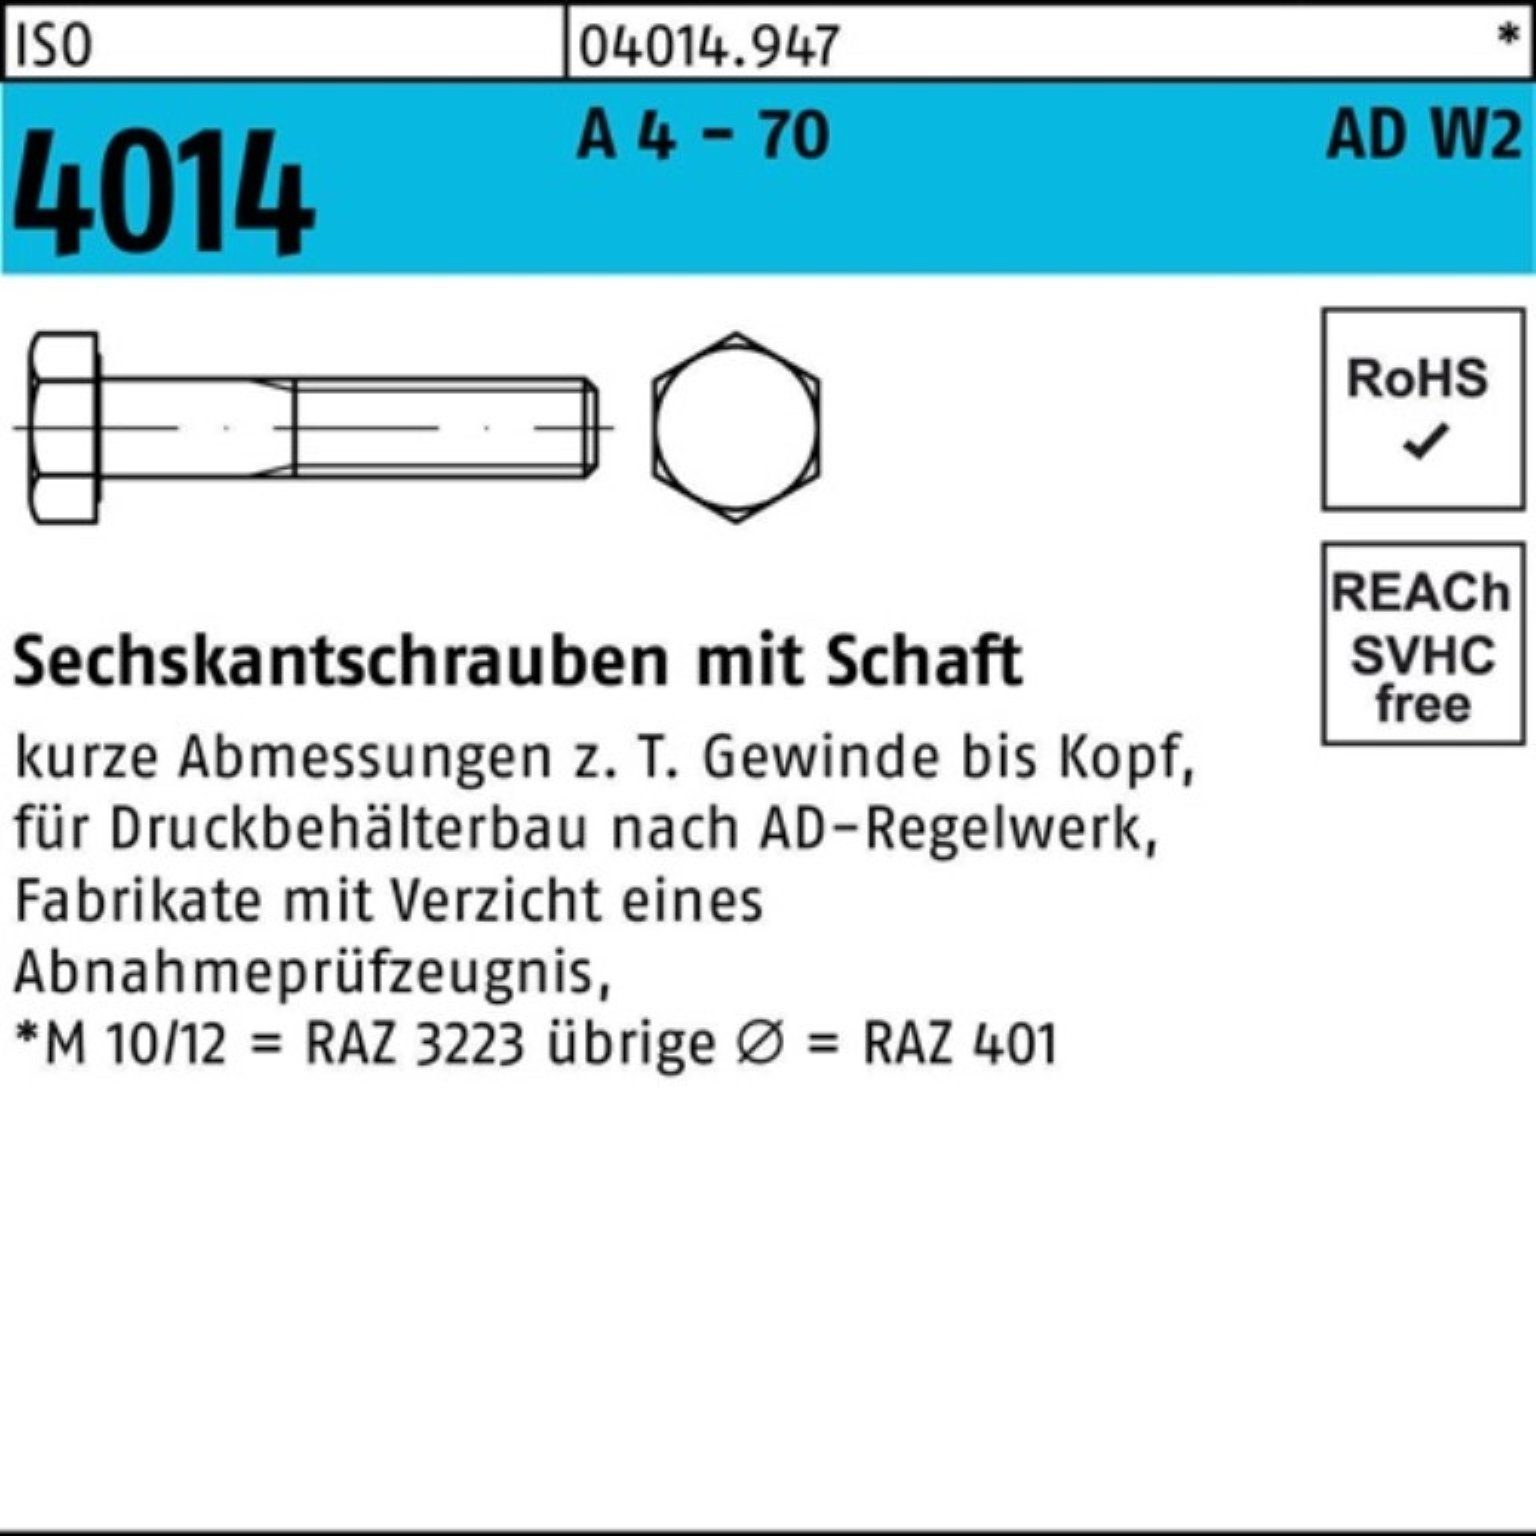 Bufab Sechskantschraube 100er Pack Sechskantschraube ISO 4014 Schaft M20x 65 A 4 - 70 AD-W2 25